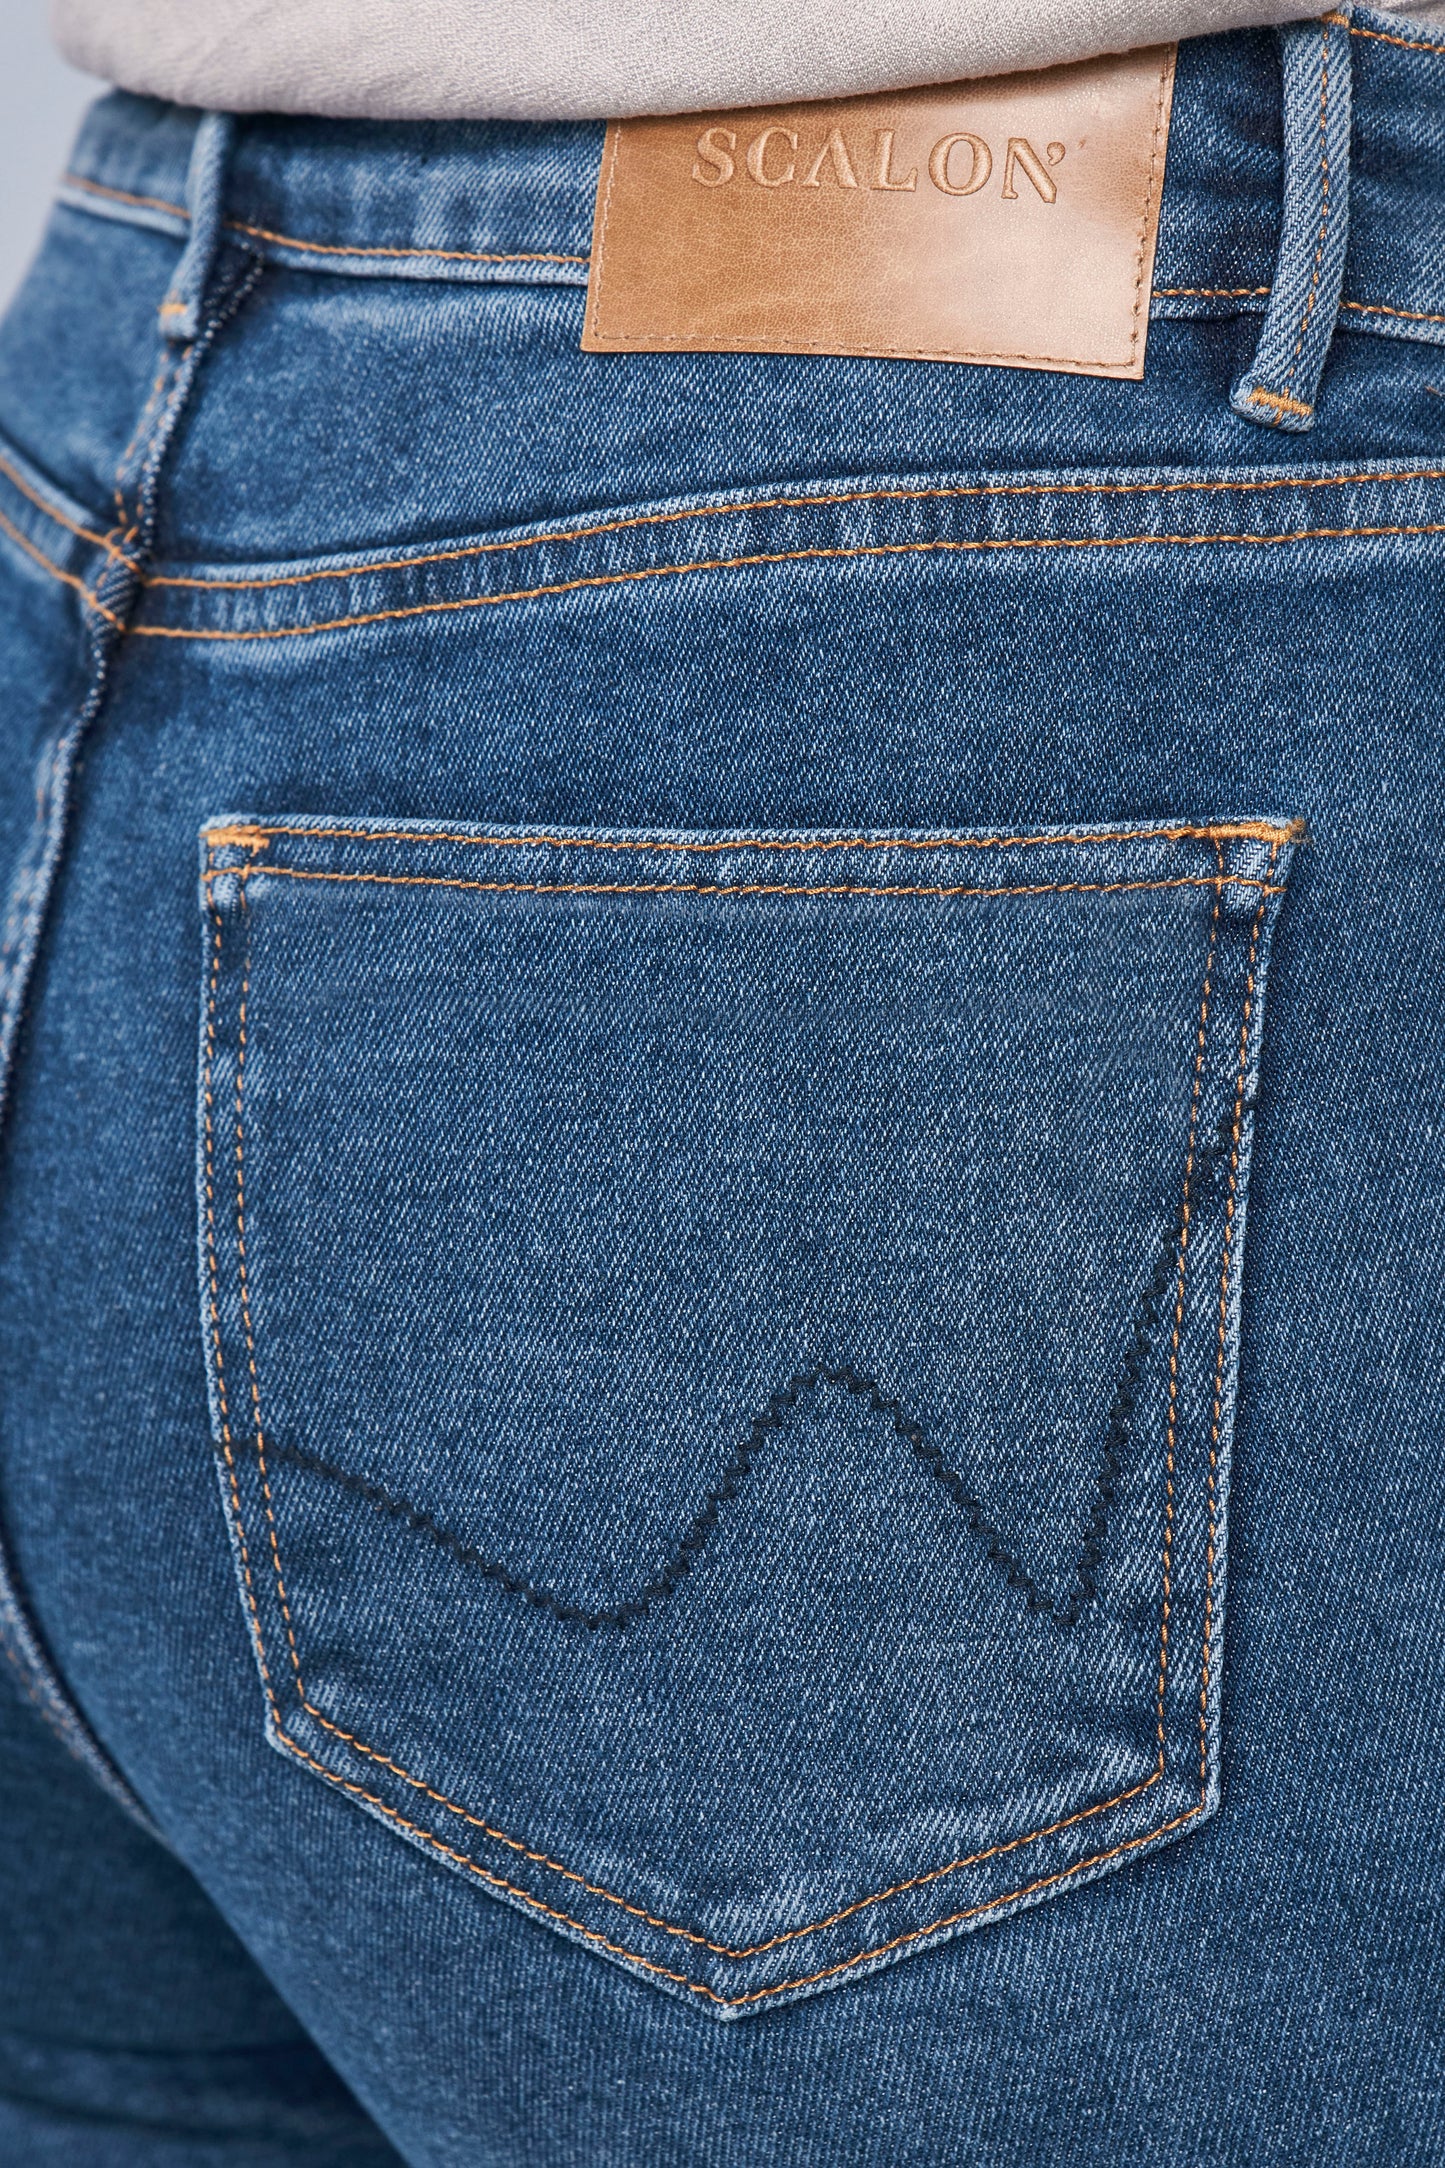 calça jeans wide leg cintura intermediária com barra a fio